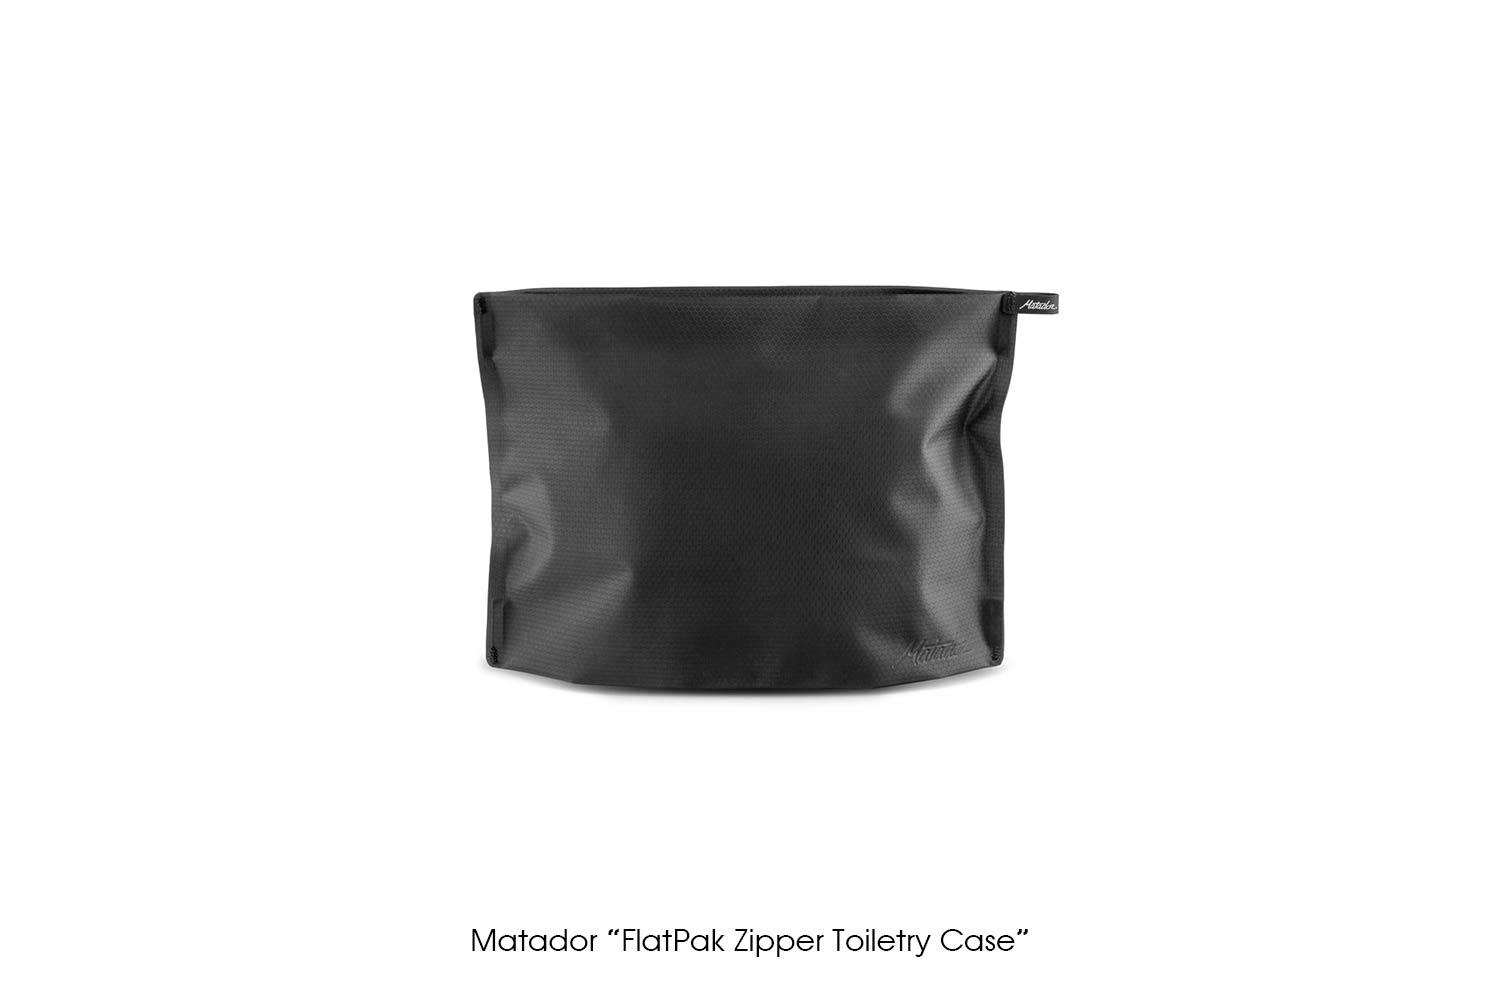 Matador "FlatPak Zipper Toiletry Case"